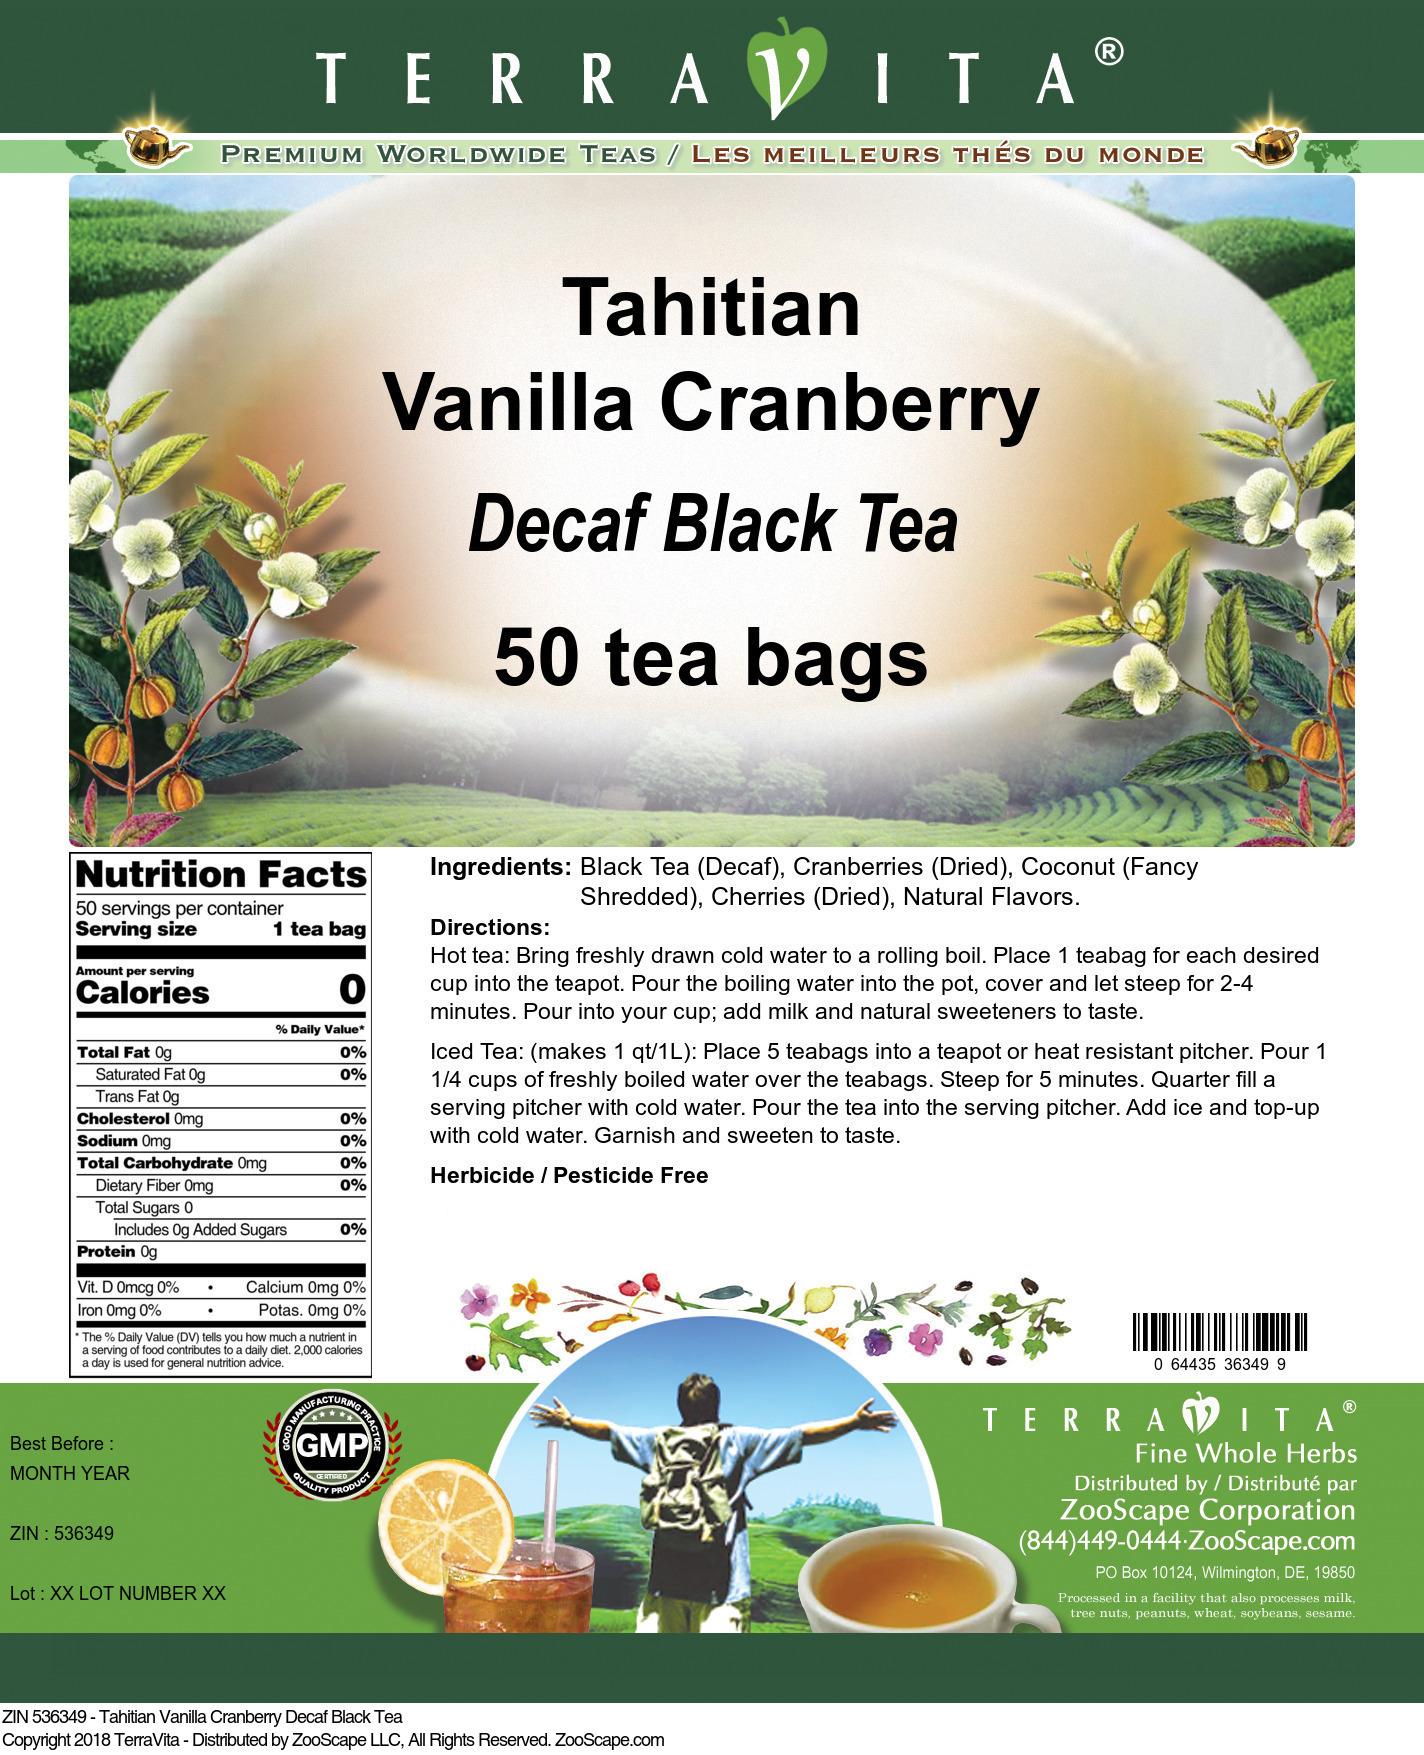 Tahitian Vanilla Cranberry Decaf Black Tea - Label